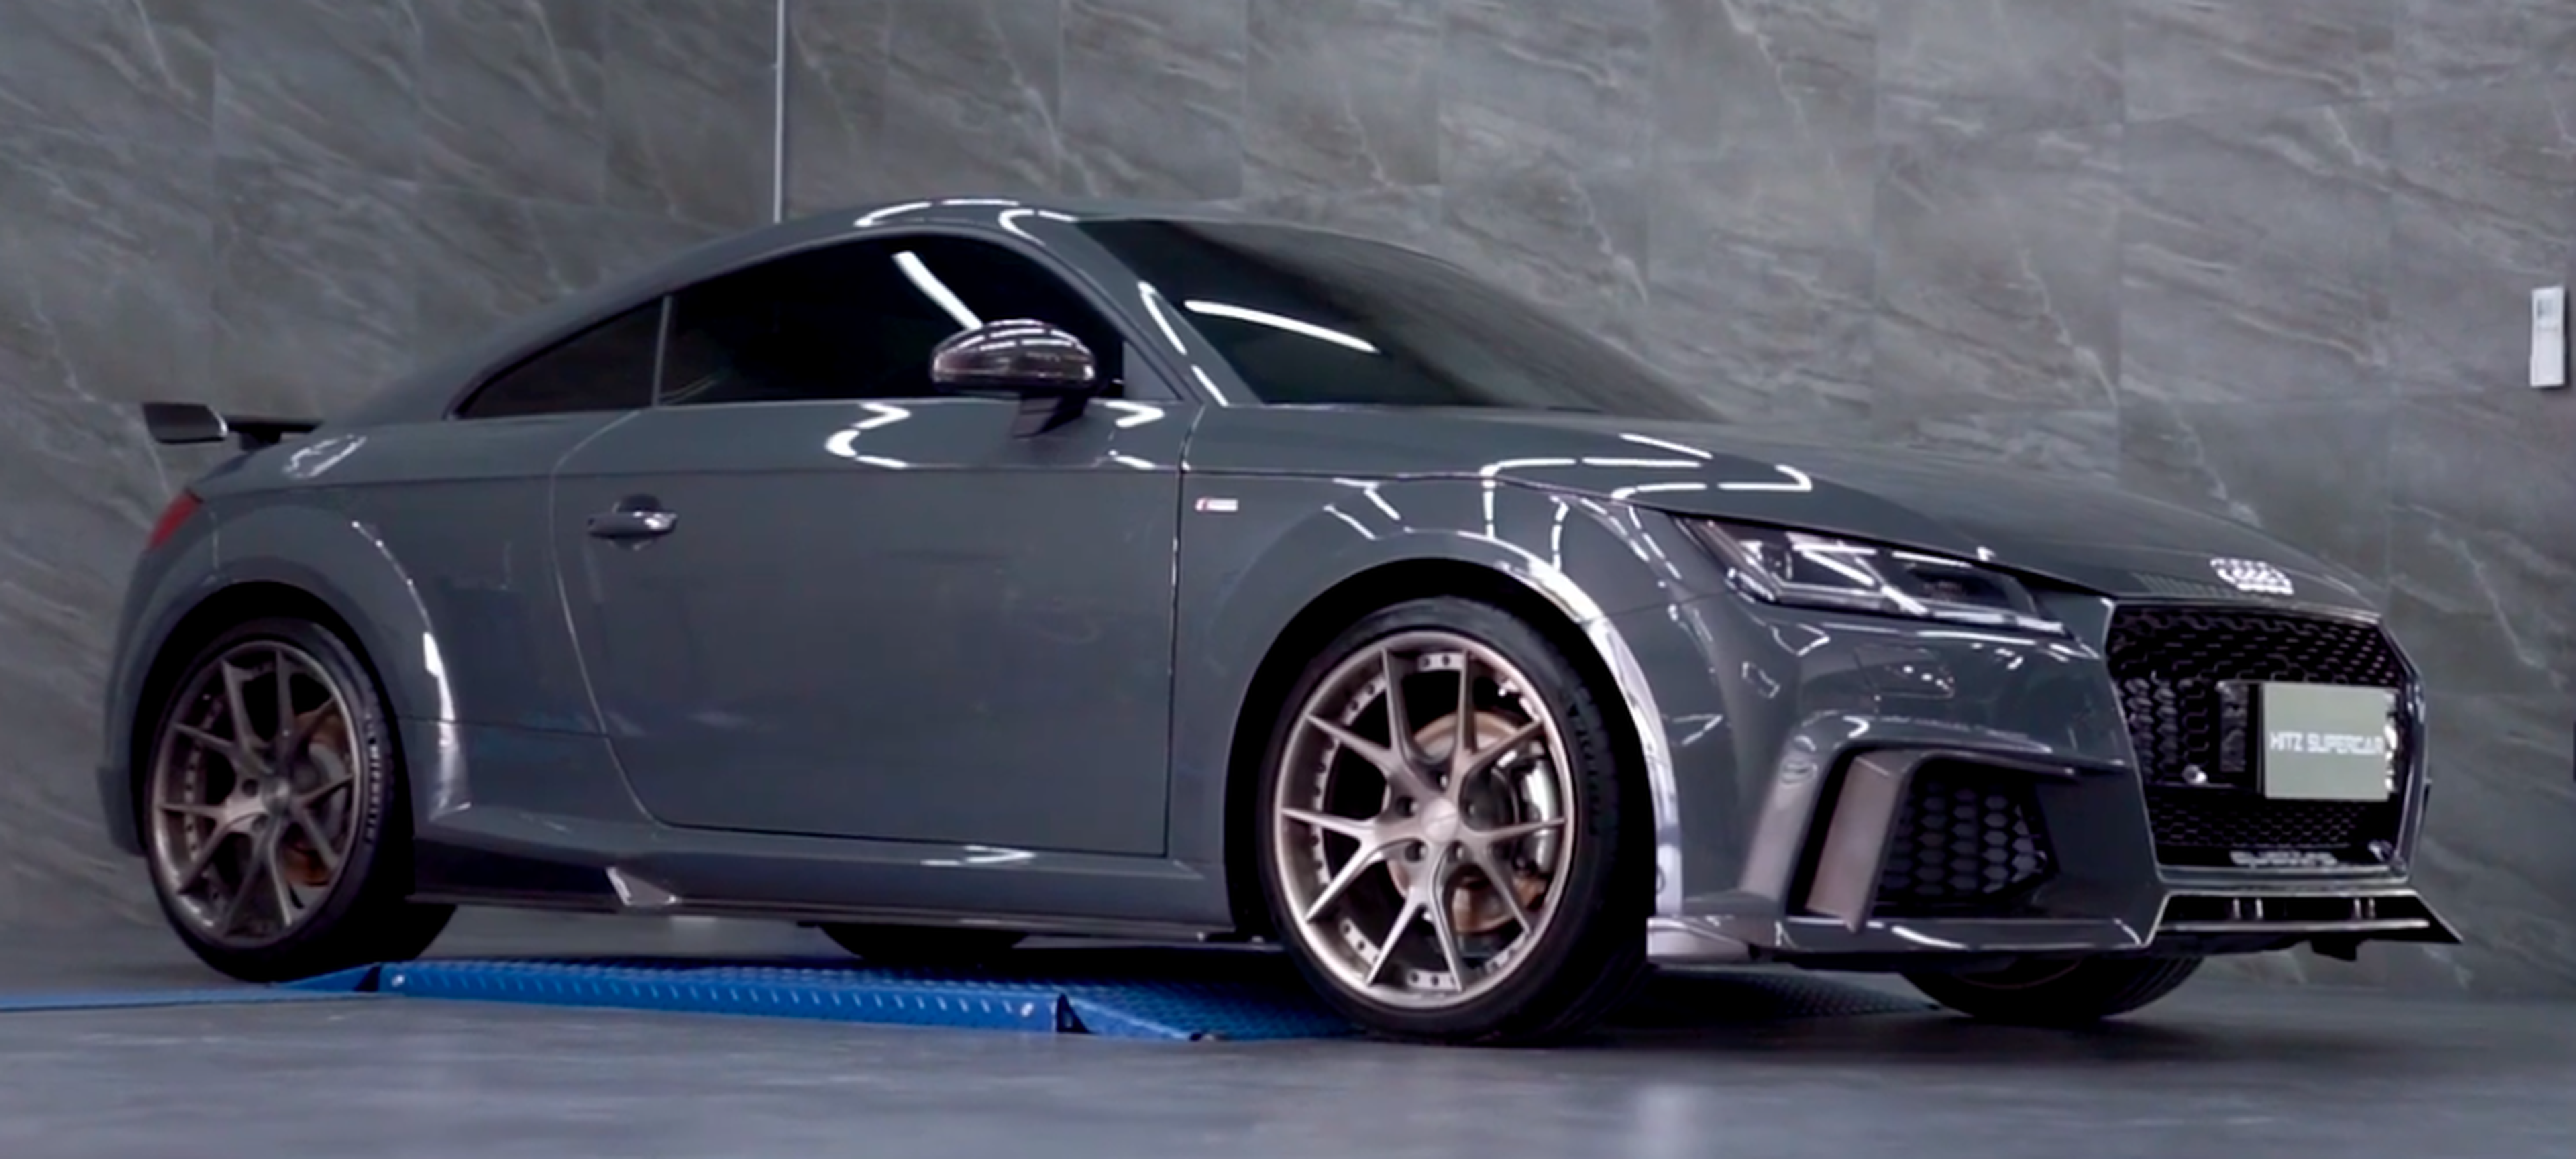 VÍDEO: Así ruge este Audi TT RS con escapes modificados de Armytrix, ¡pura fantasía!